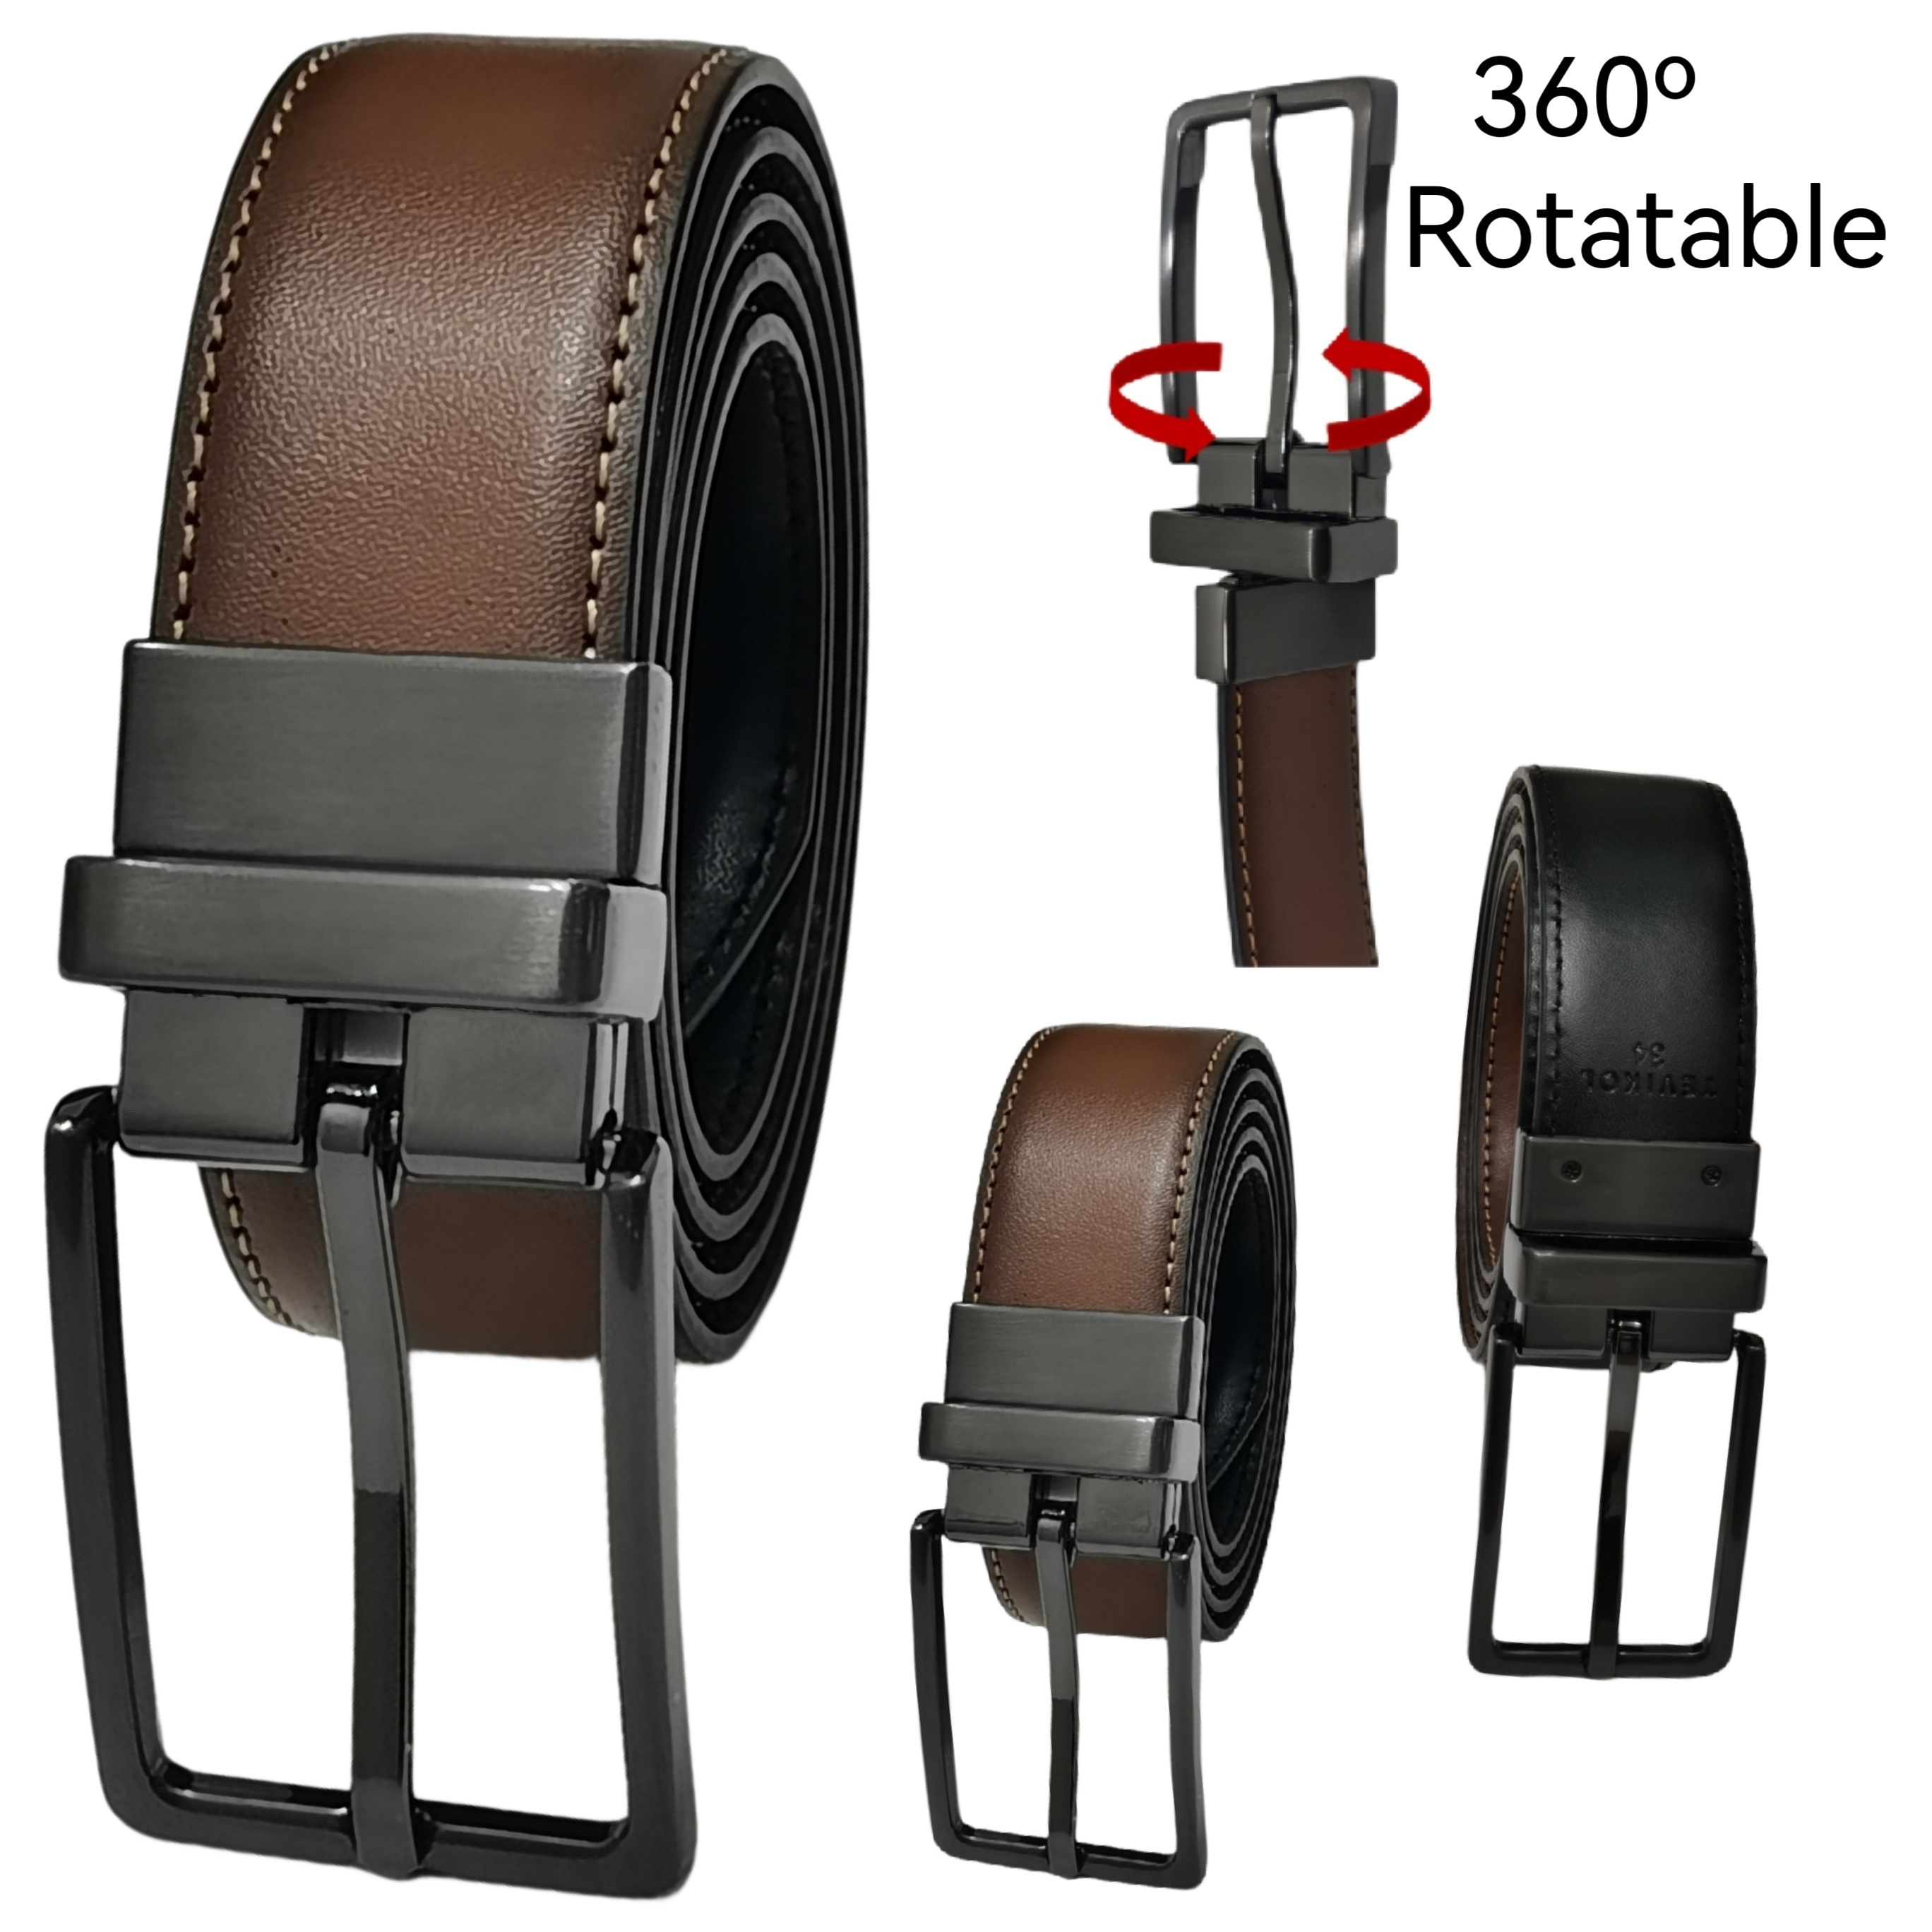 Luxury Pin Buckle Belts - Cowskin Leather Strap Belt Men Fashion Belts 1pc  Set